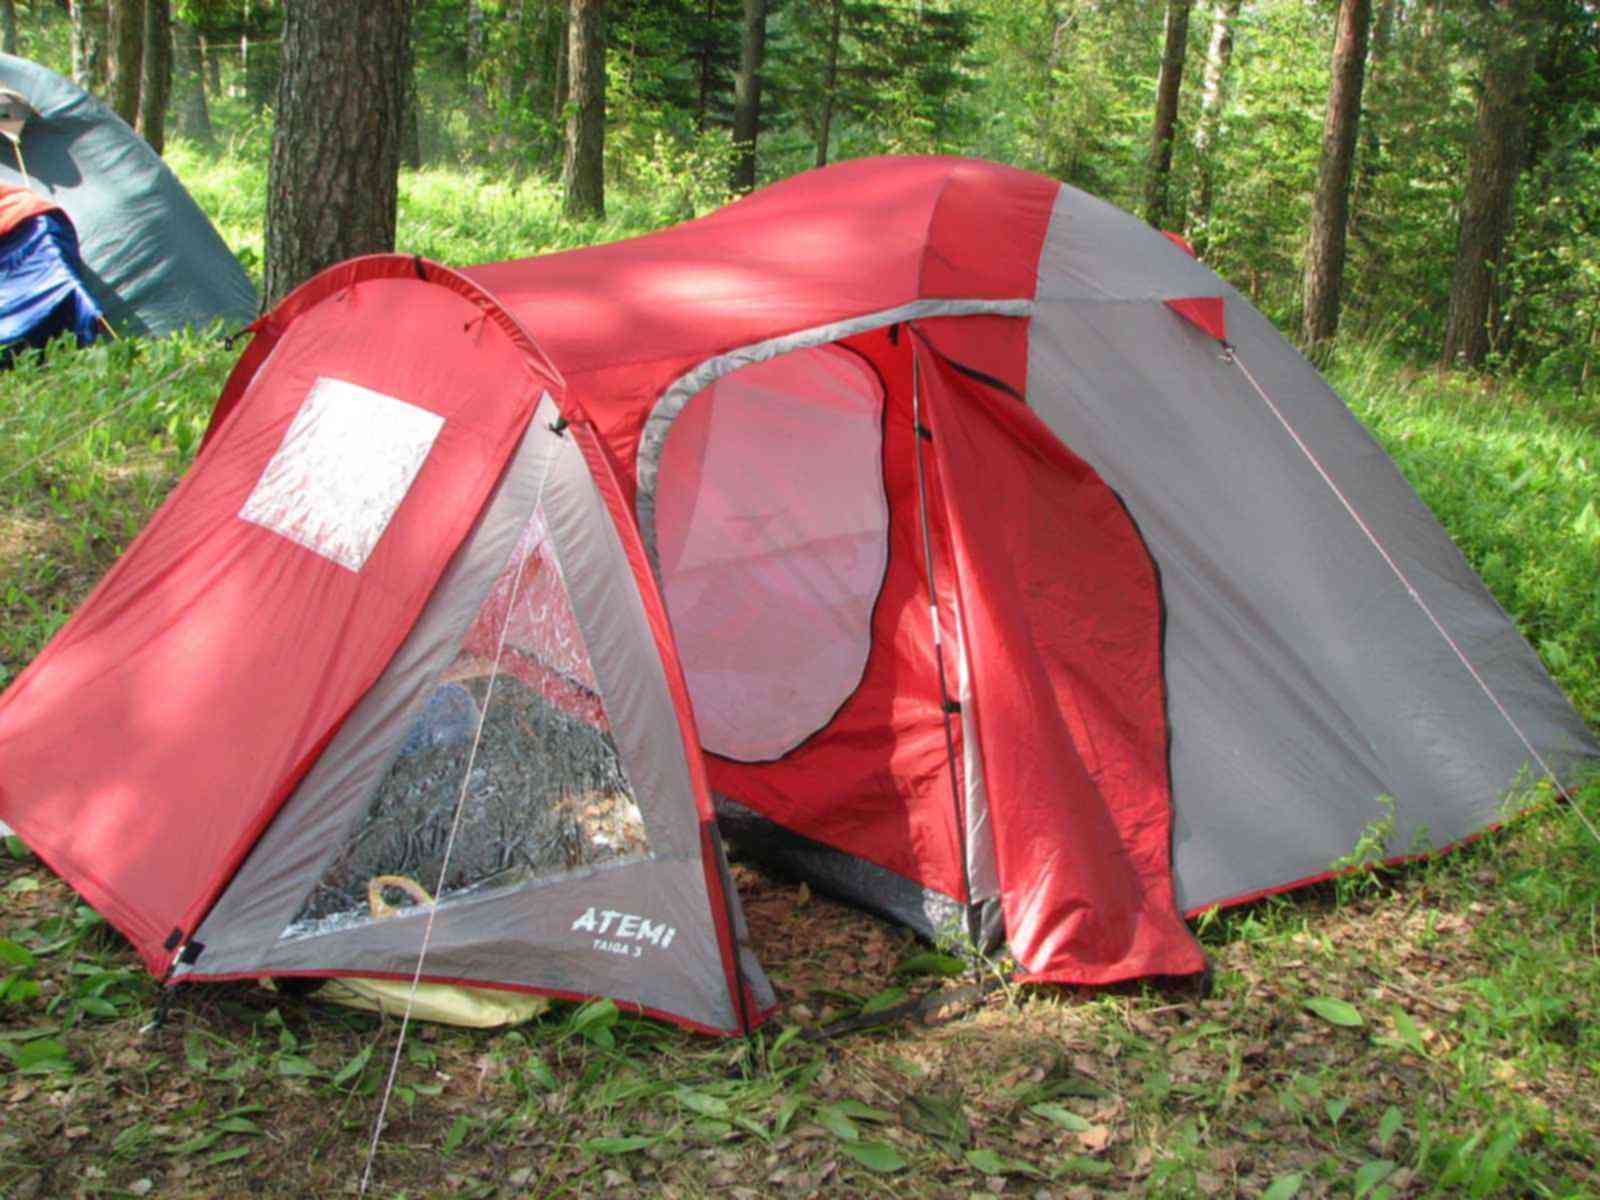 Палатка туристическая купить авито